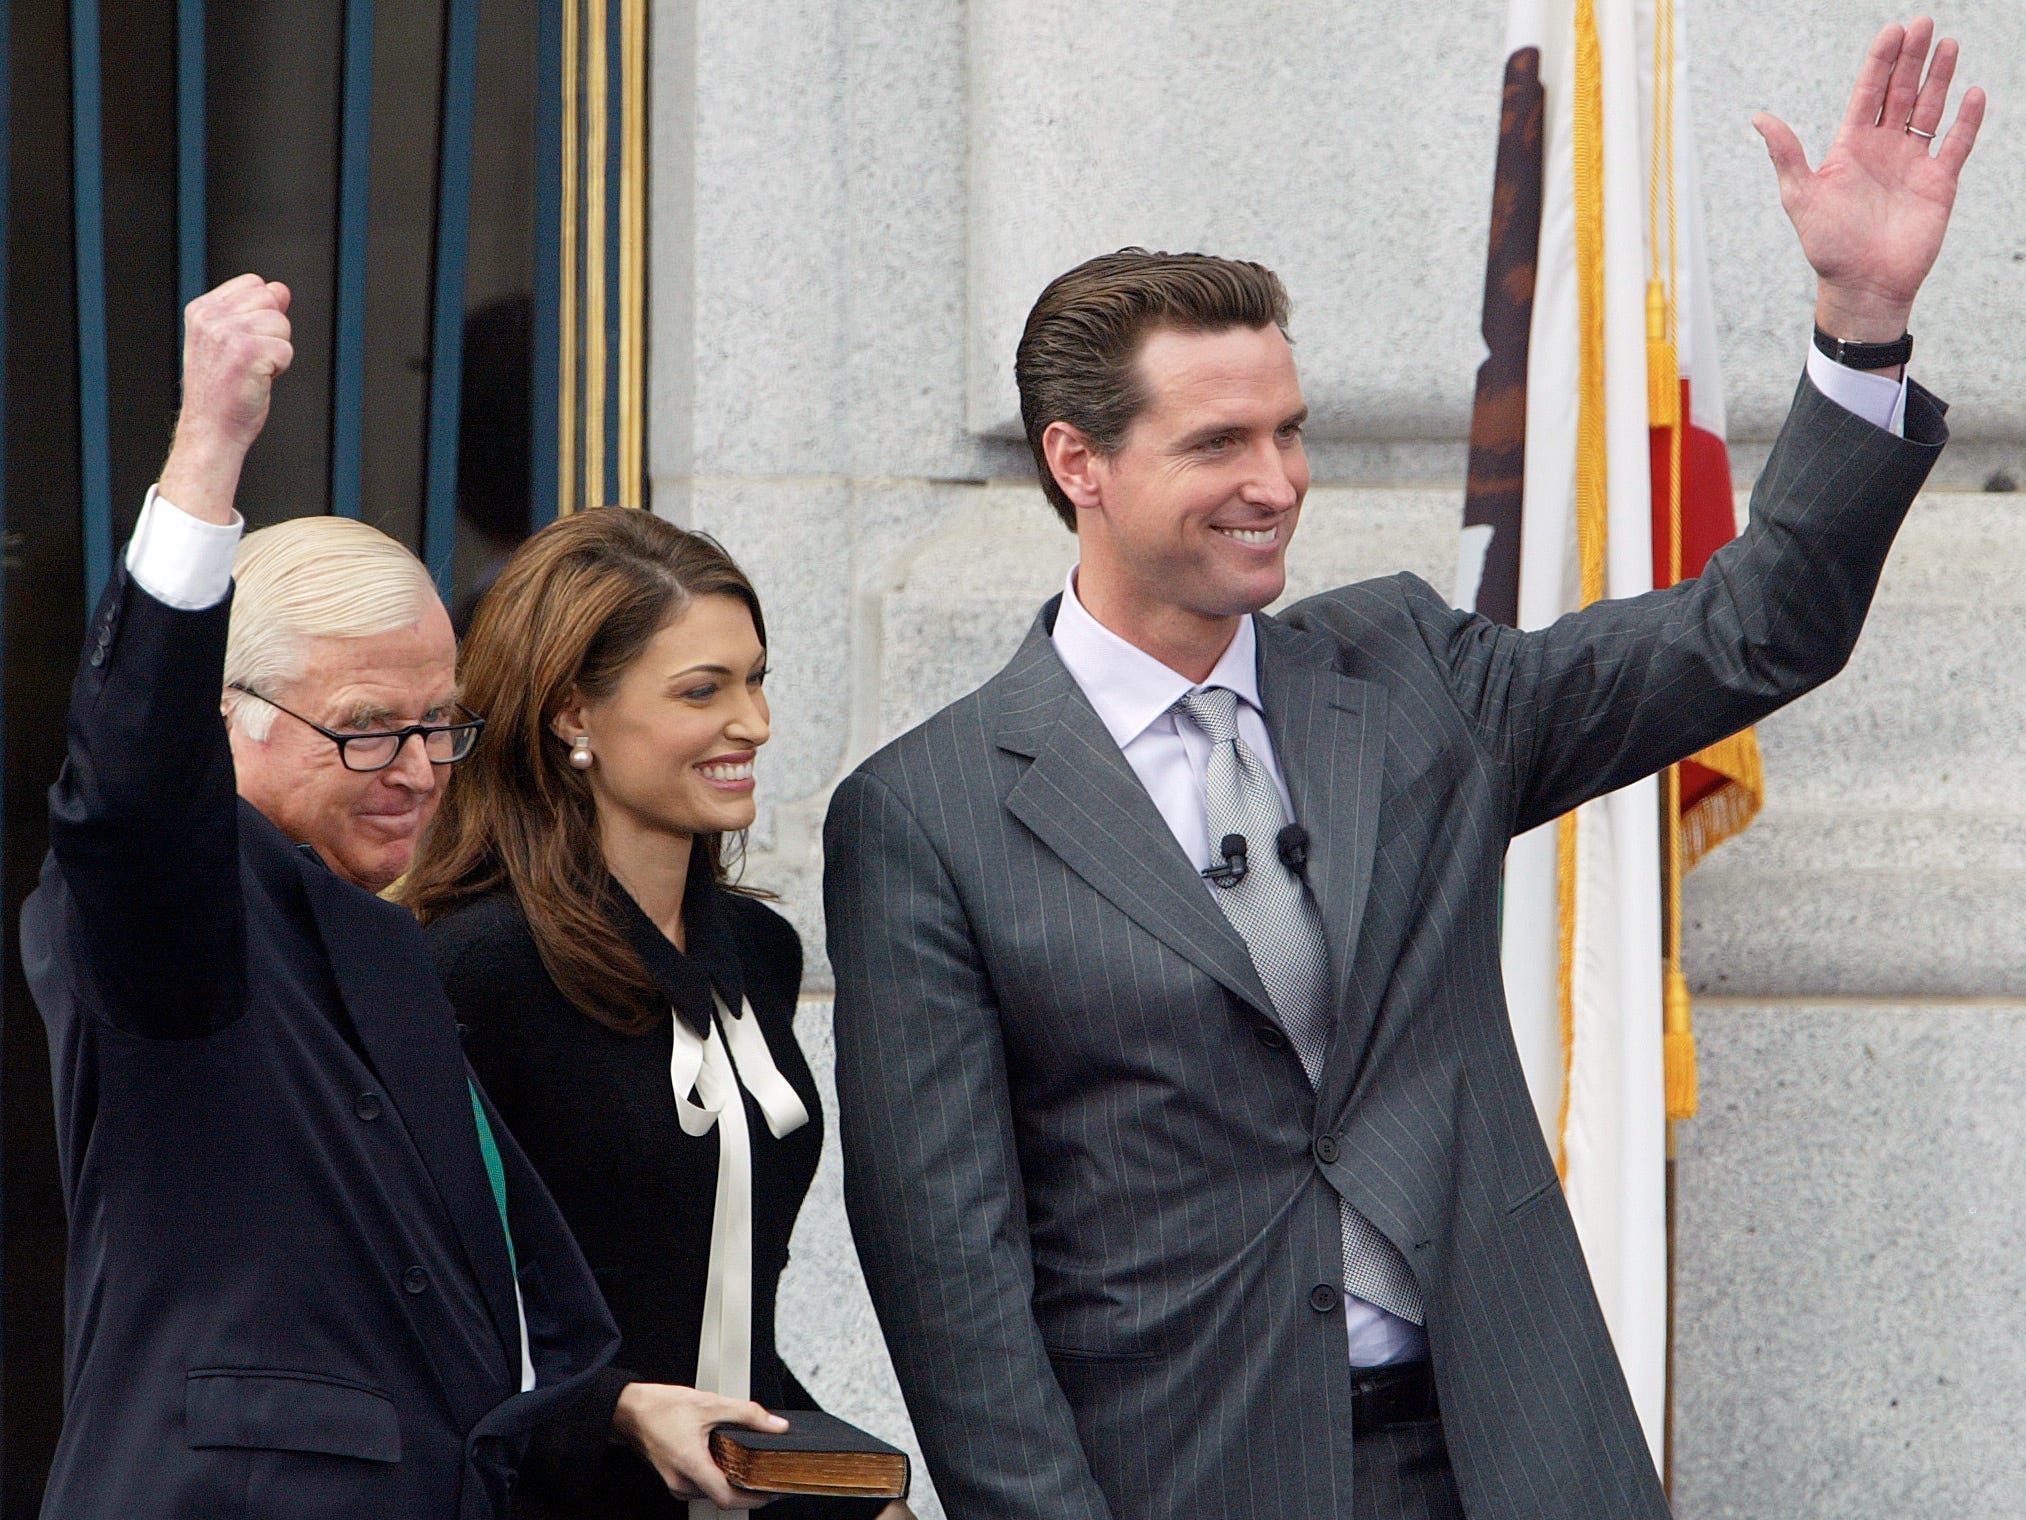 er neue Bürgermeister von San Francisco, Gavin Newsom, winkt gemeinsam mit seinem Vater Richter William Newsom und seiner Frau Kimberly Guilfoyle Newsom der Menge zu, nachdem sie den Amtseid abgelegt haben.